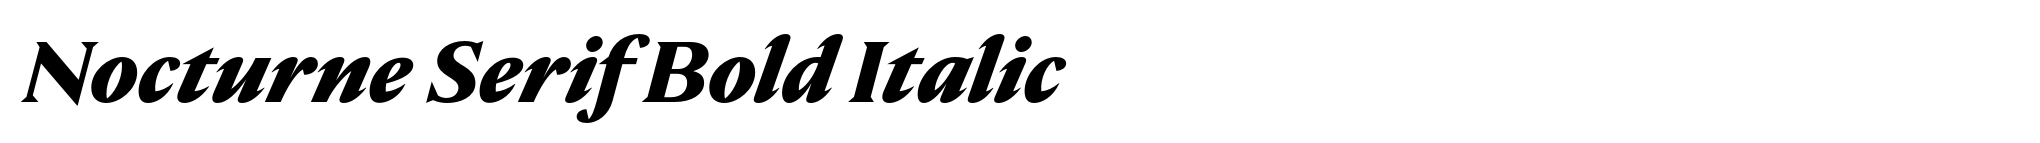 Nocturne Serif Bold Italic image